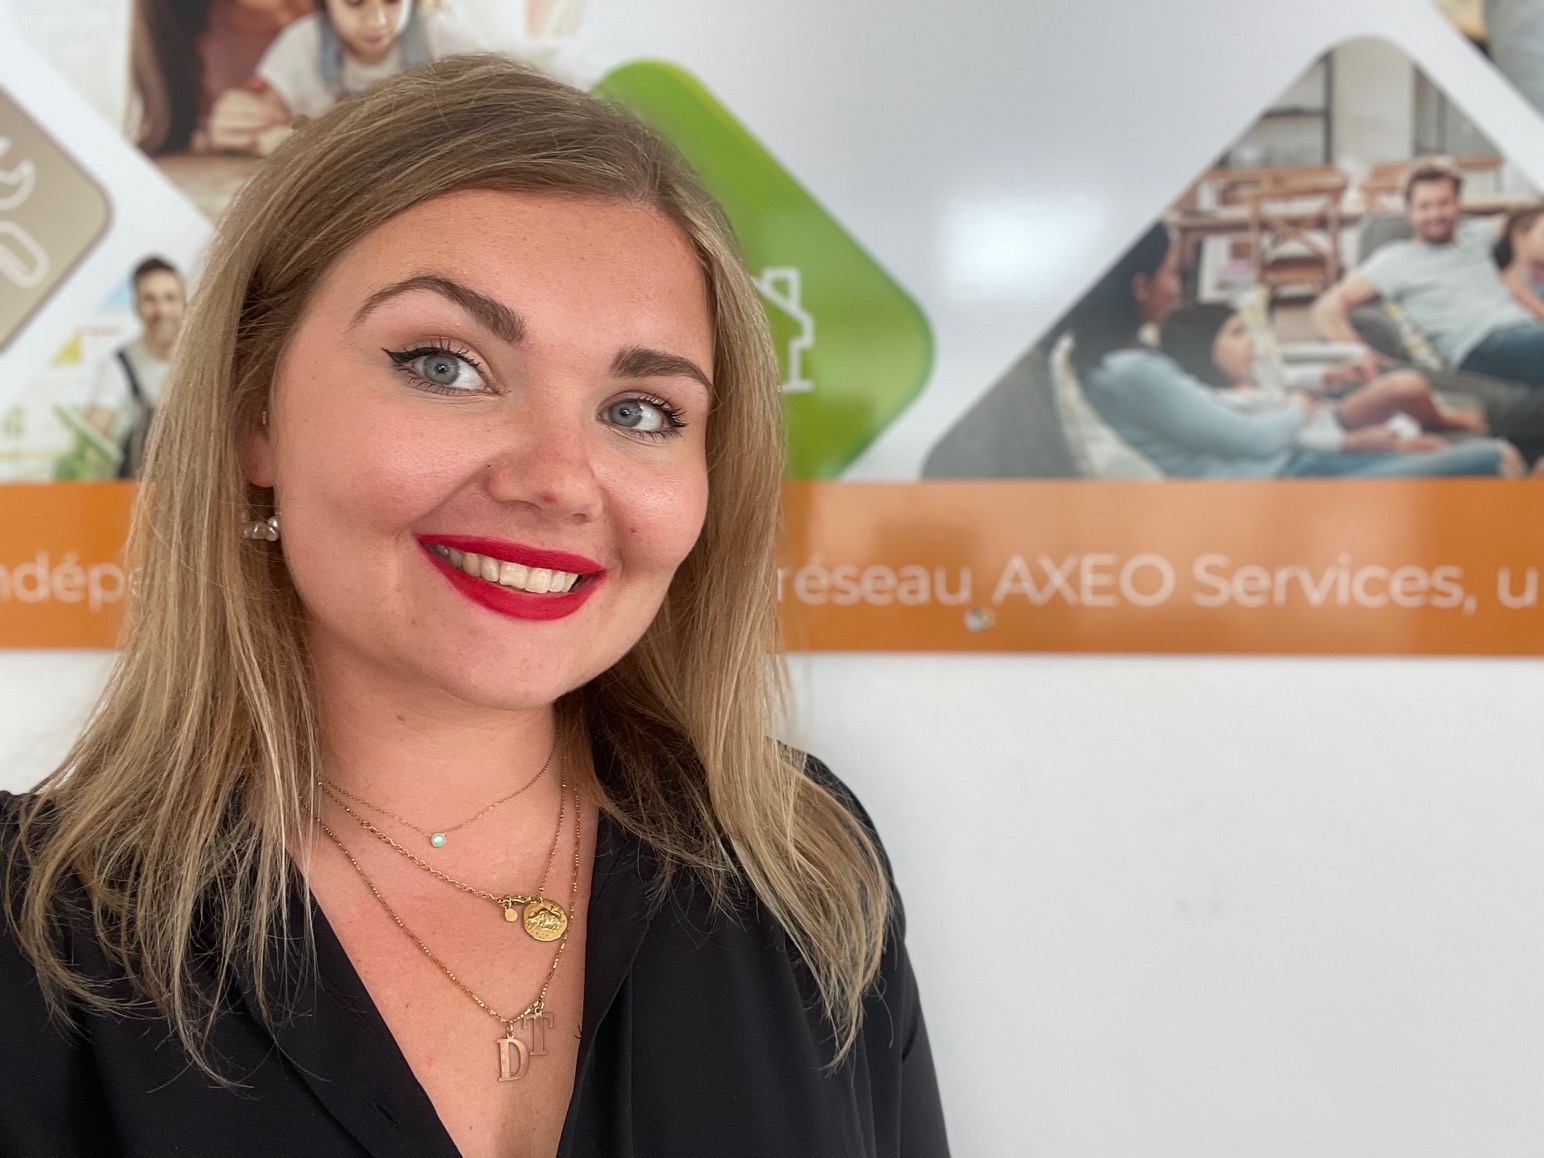 AXEO Services Dunkerque